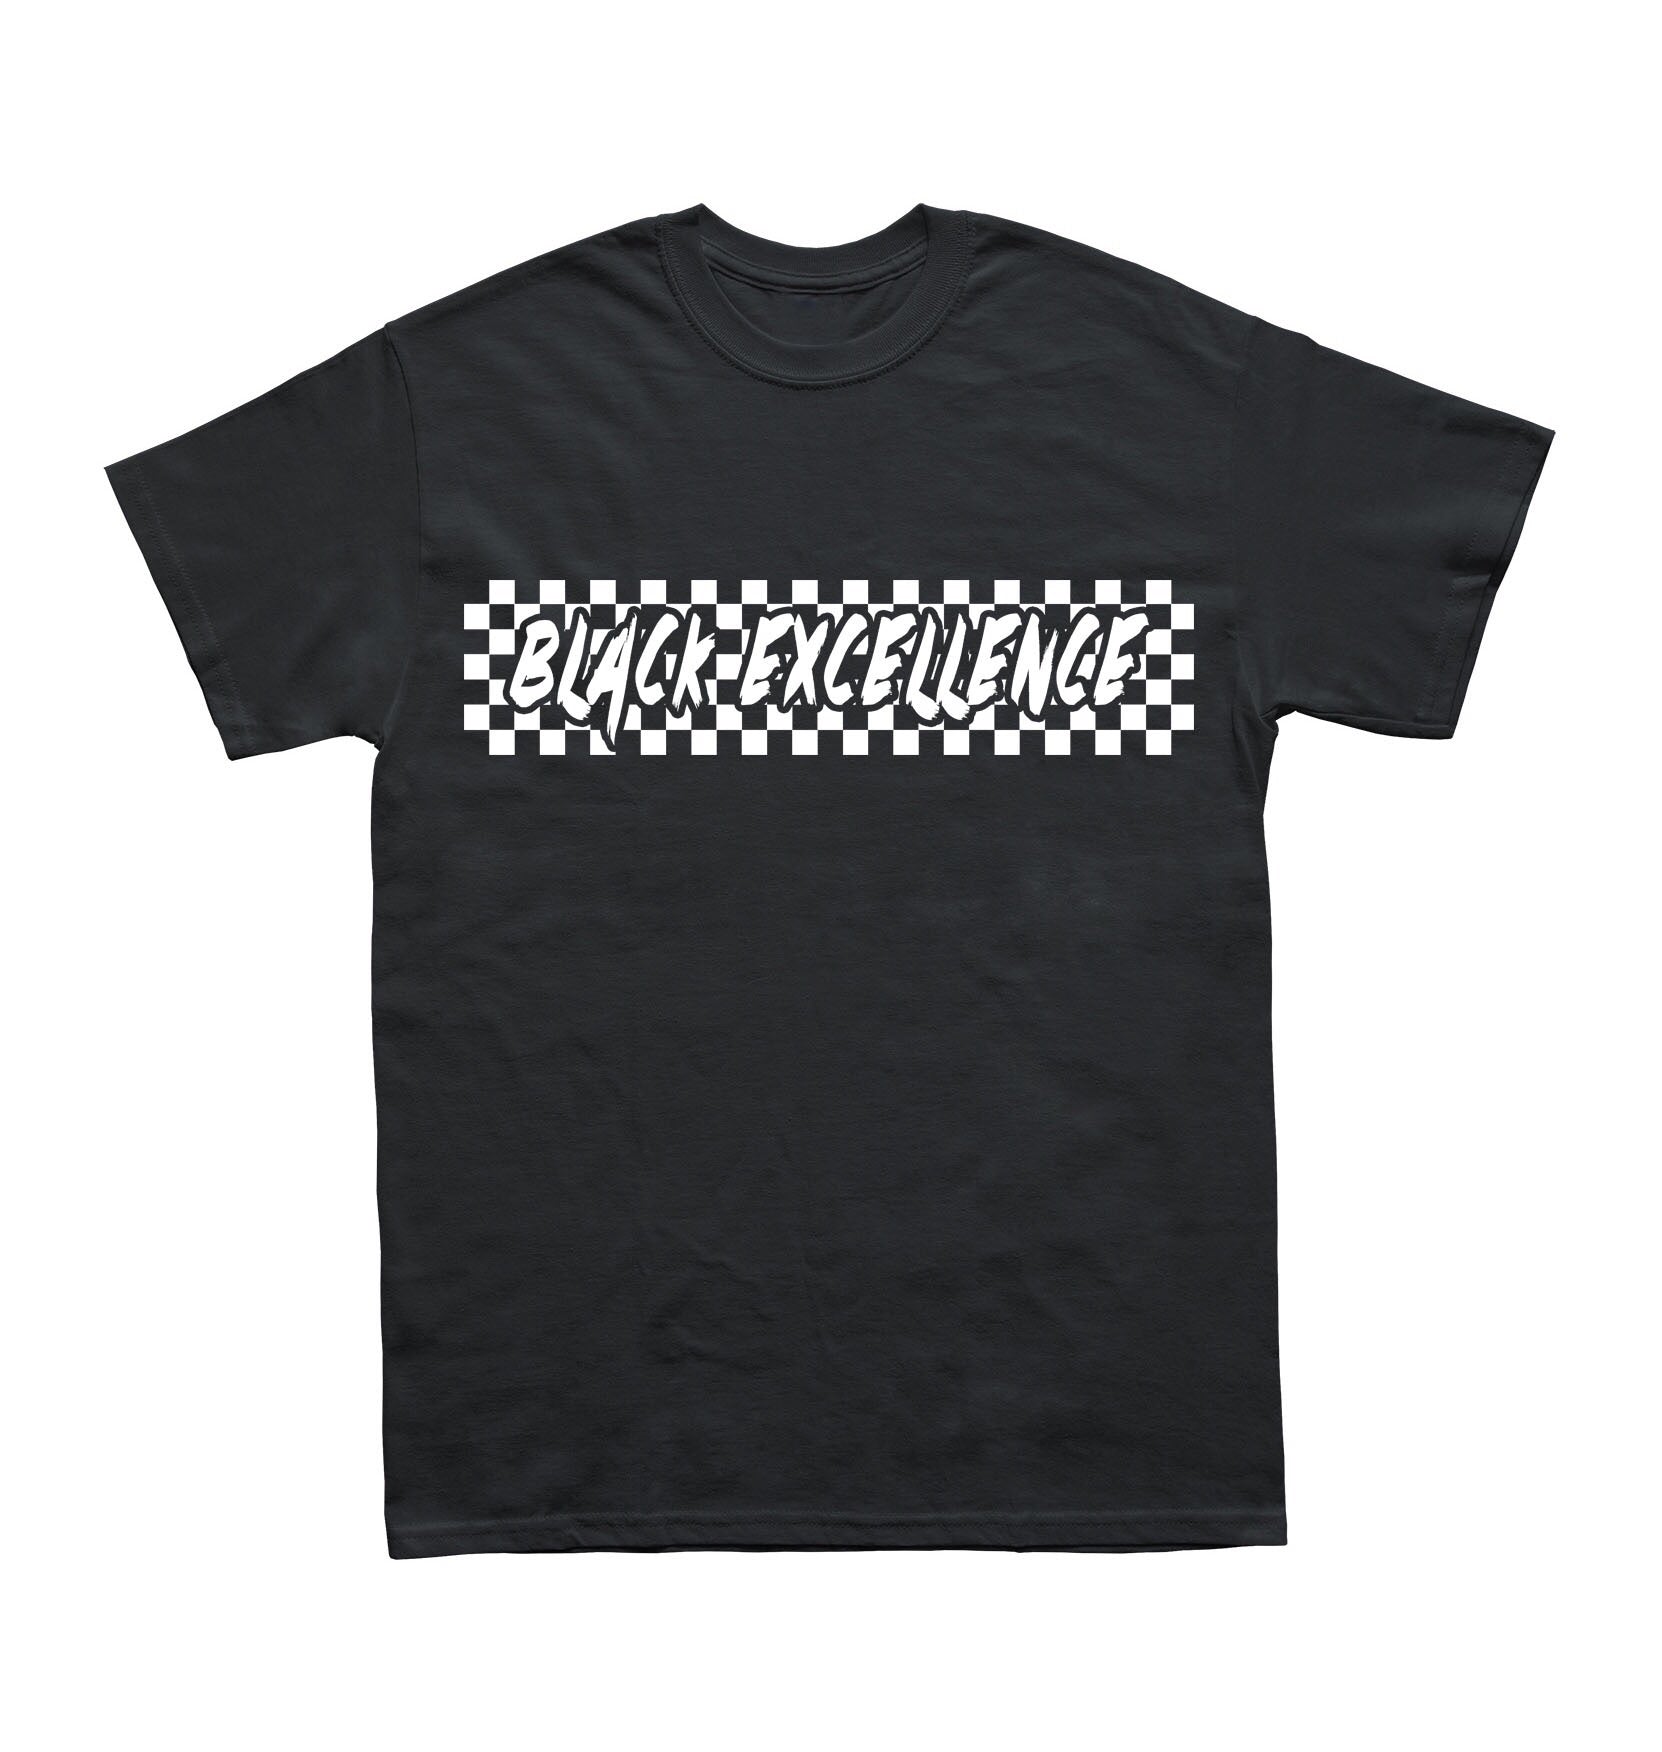 Checkered Black Excellence Shirt - Black10.com